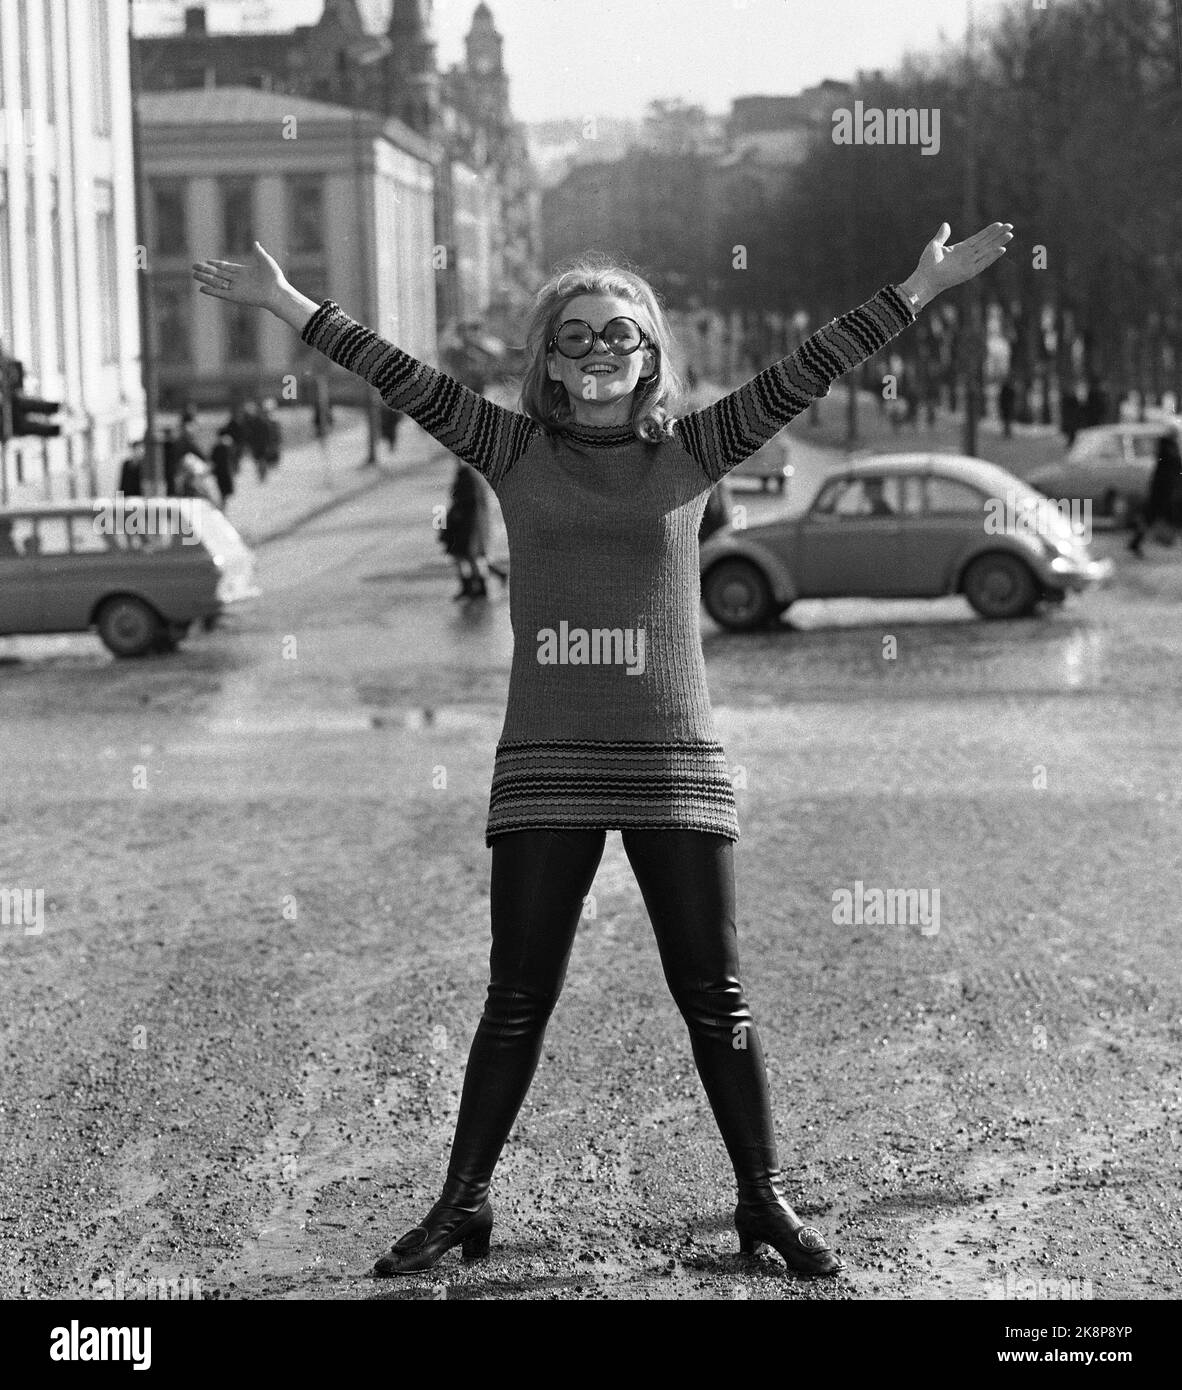 Oslo 19690320 l'artiste Kirsti Sparboe représentera la Norvège au concours international du Grand Prix avec la chanson "OJ, OJ, OJ si heureux que je serai". Ici photographié à Karl Johan, en mini jupes, collants et grands verres. Photo: NTB / NTB Banque D'Images